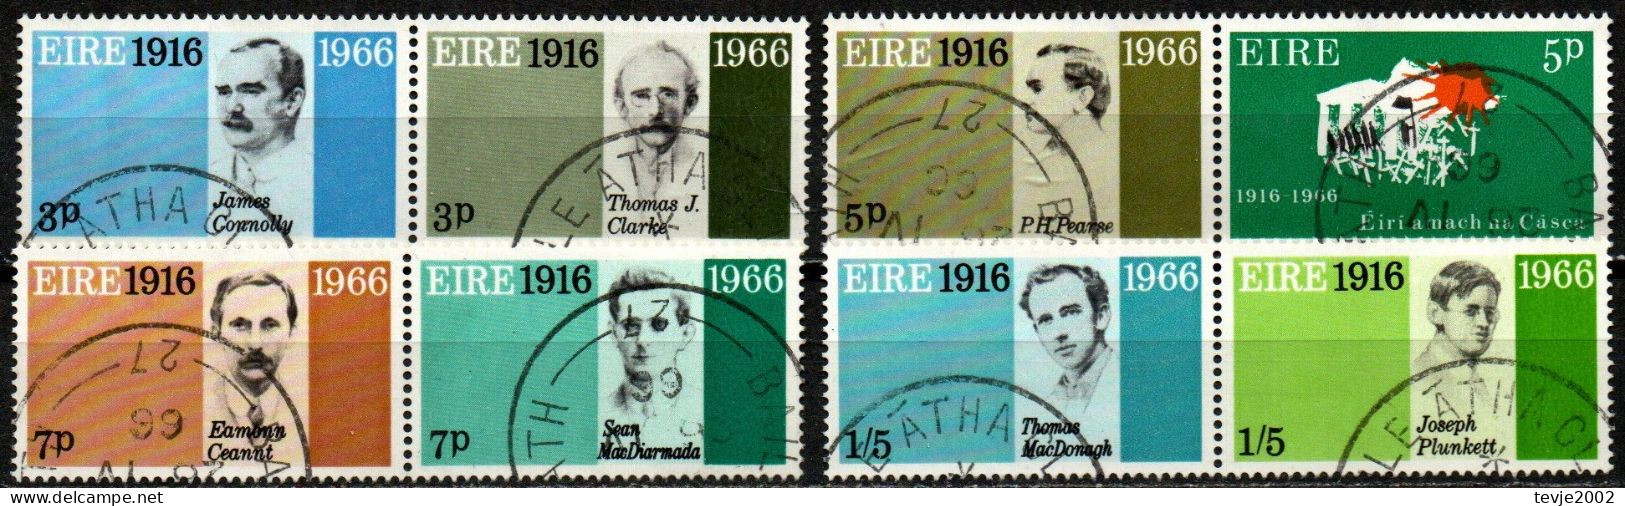 Irland Eire 1966 - Mi.Nr. 178 - 185 - 4 Paare - Gestempelt Used - Usati